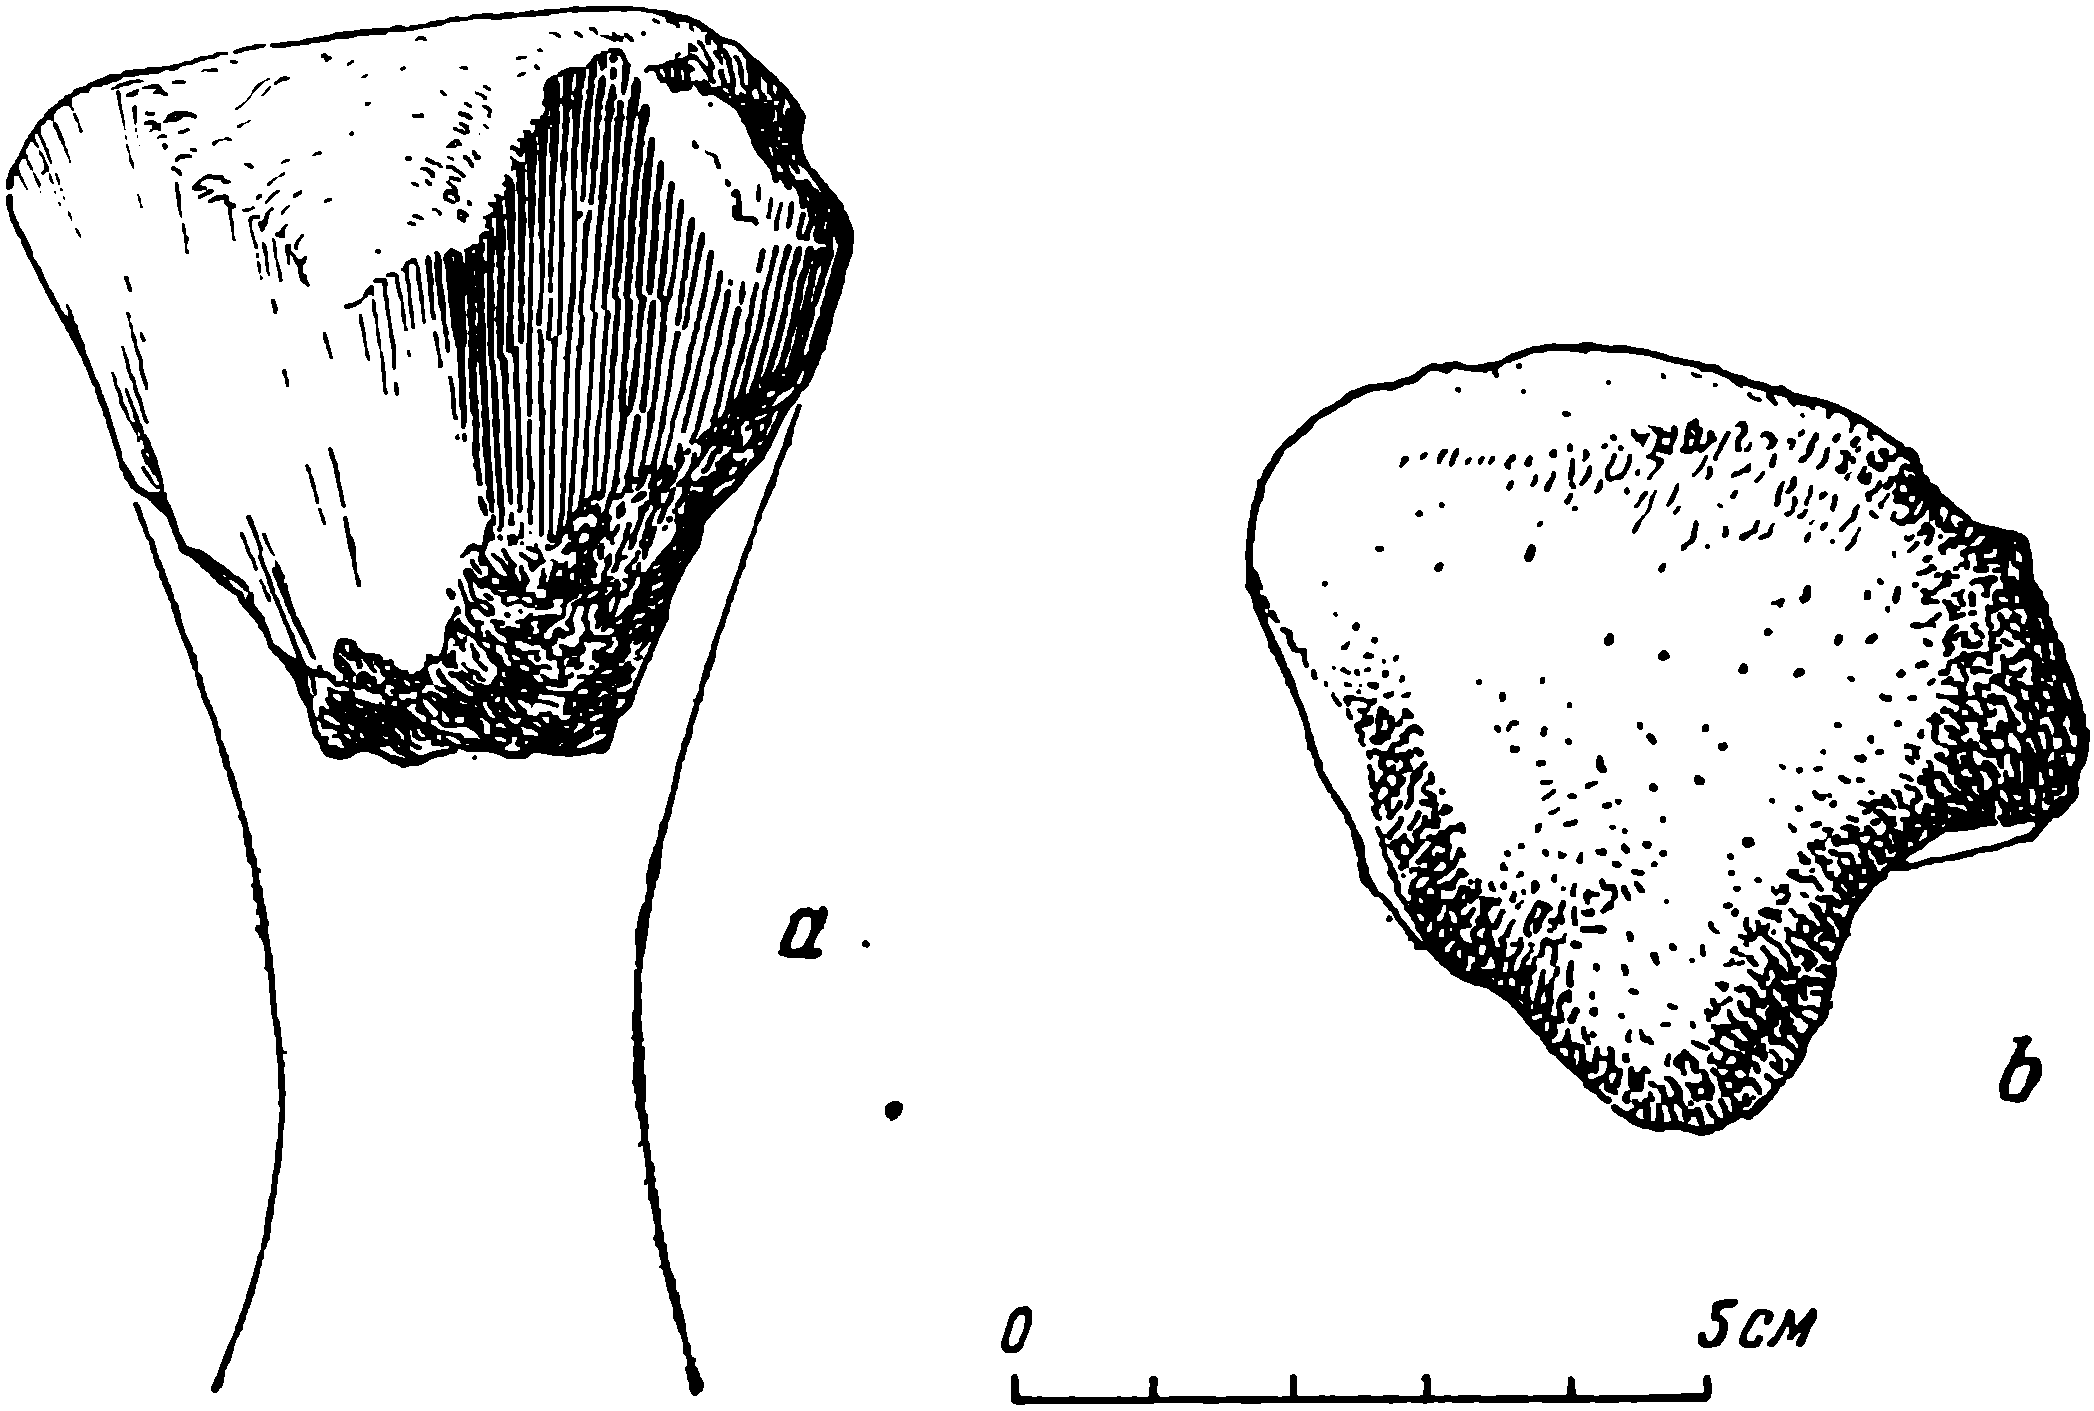 Рис. 65. Phreatosaurus bazhovi gen. et sp. nov. Большая берцовая кость (tibia), проксимальная часть, ЛГМ/ЧМП № 84. a — передне-нижняя сторона; b — вид сверху (проксимальная суставная поверхность)